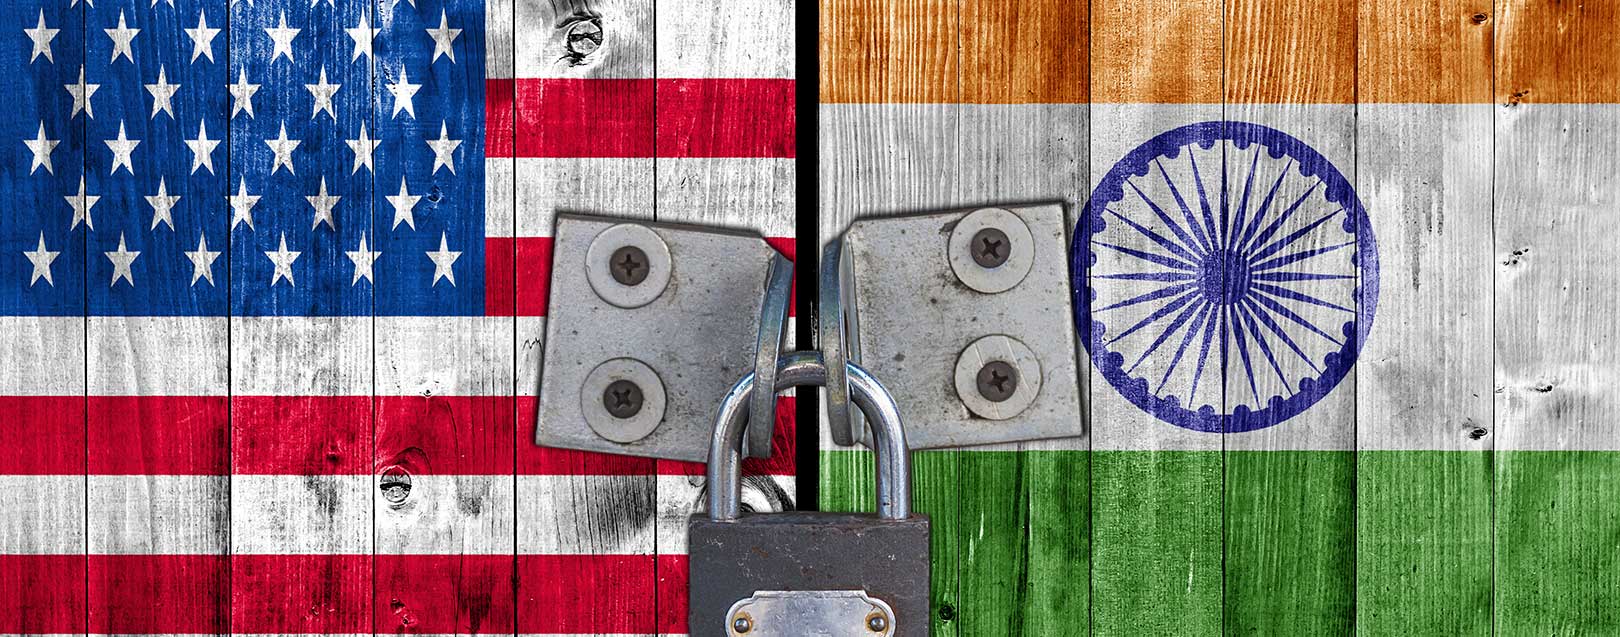 India-US to strengthen ties under Trump: Arun Jaitley